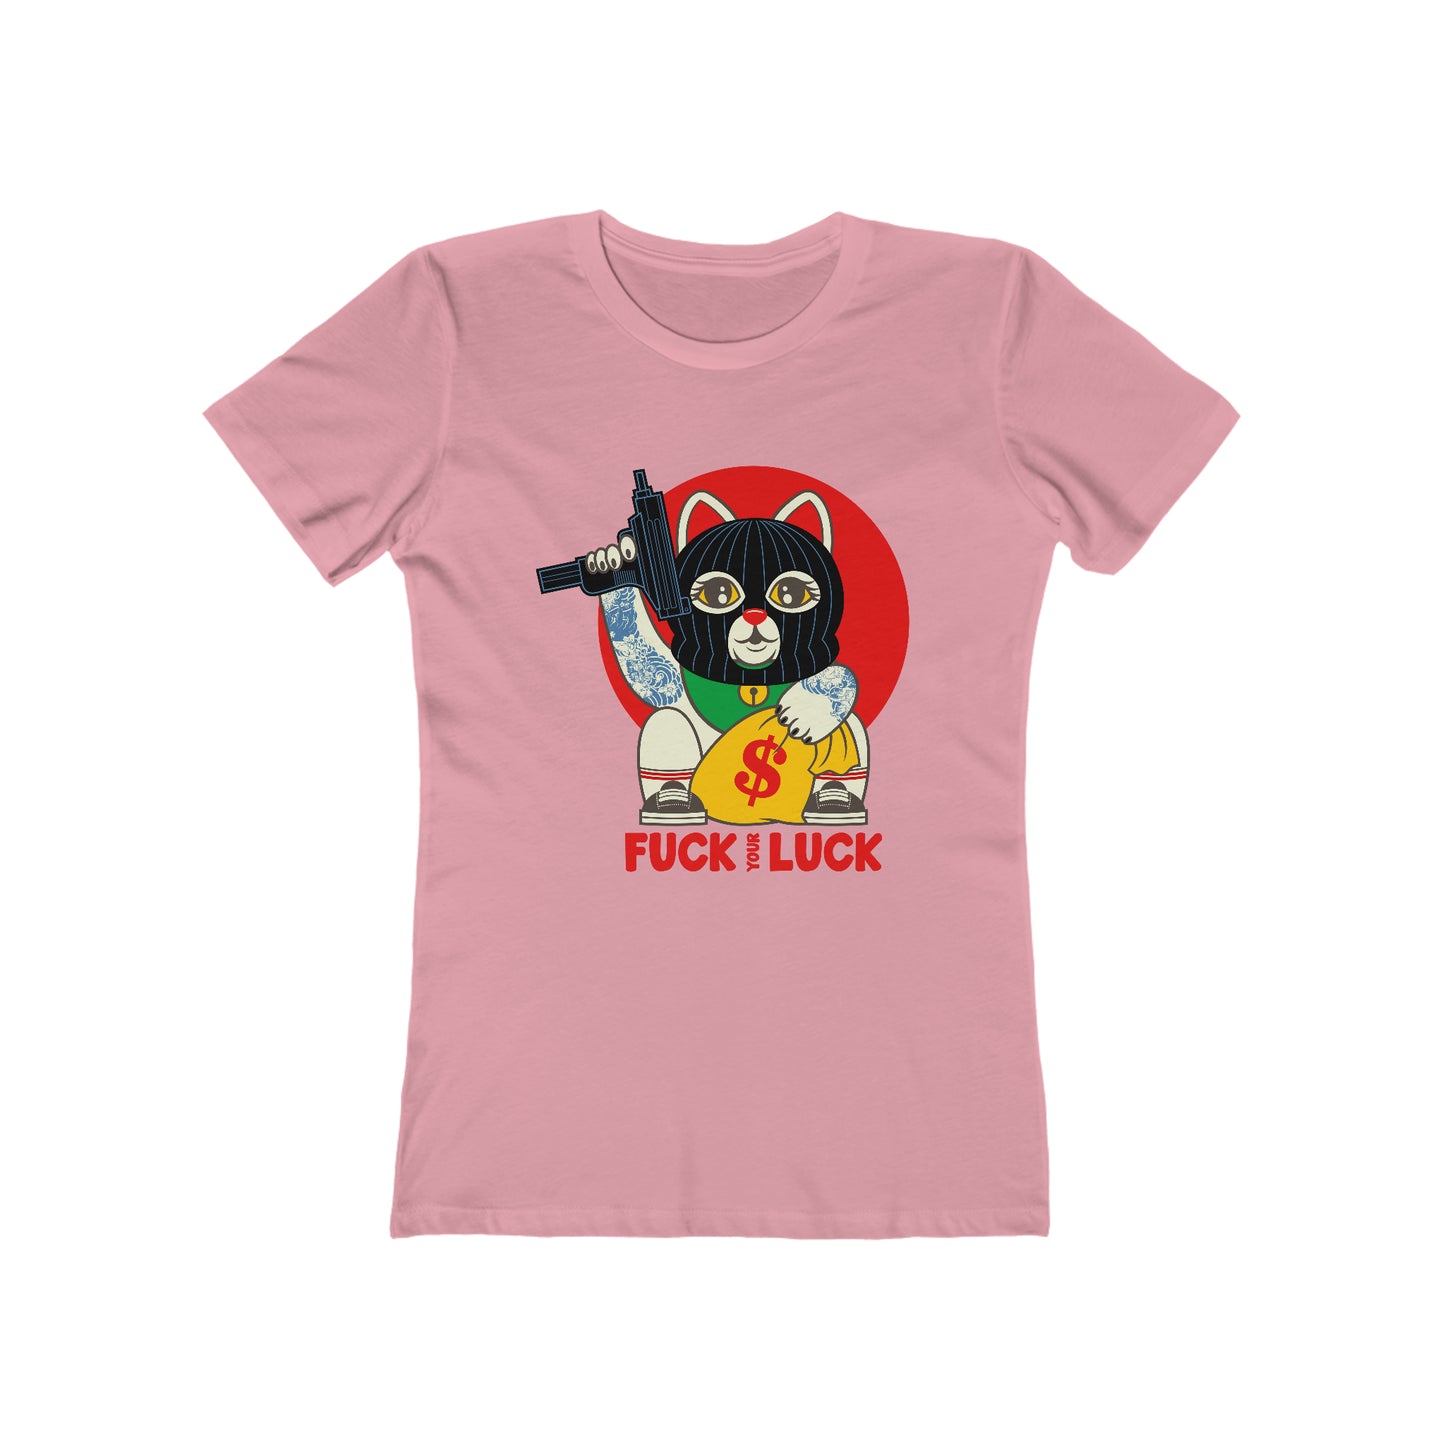 Fuck Your Luck - Women's T-shirt